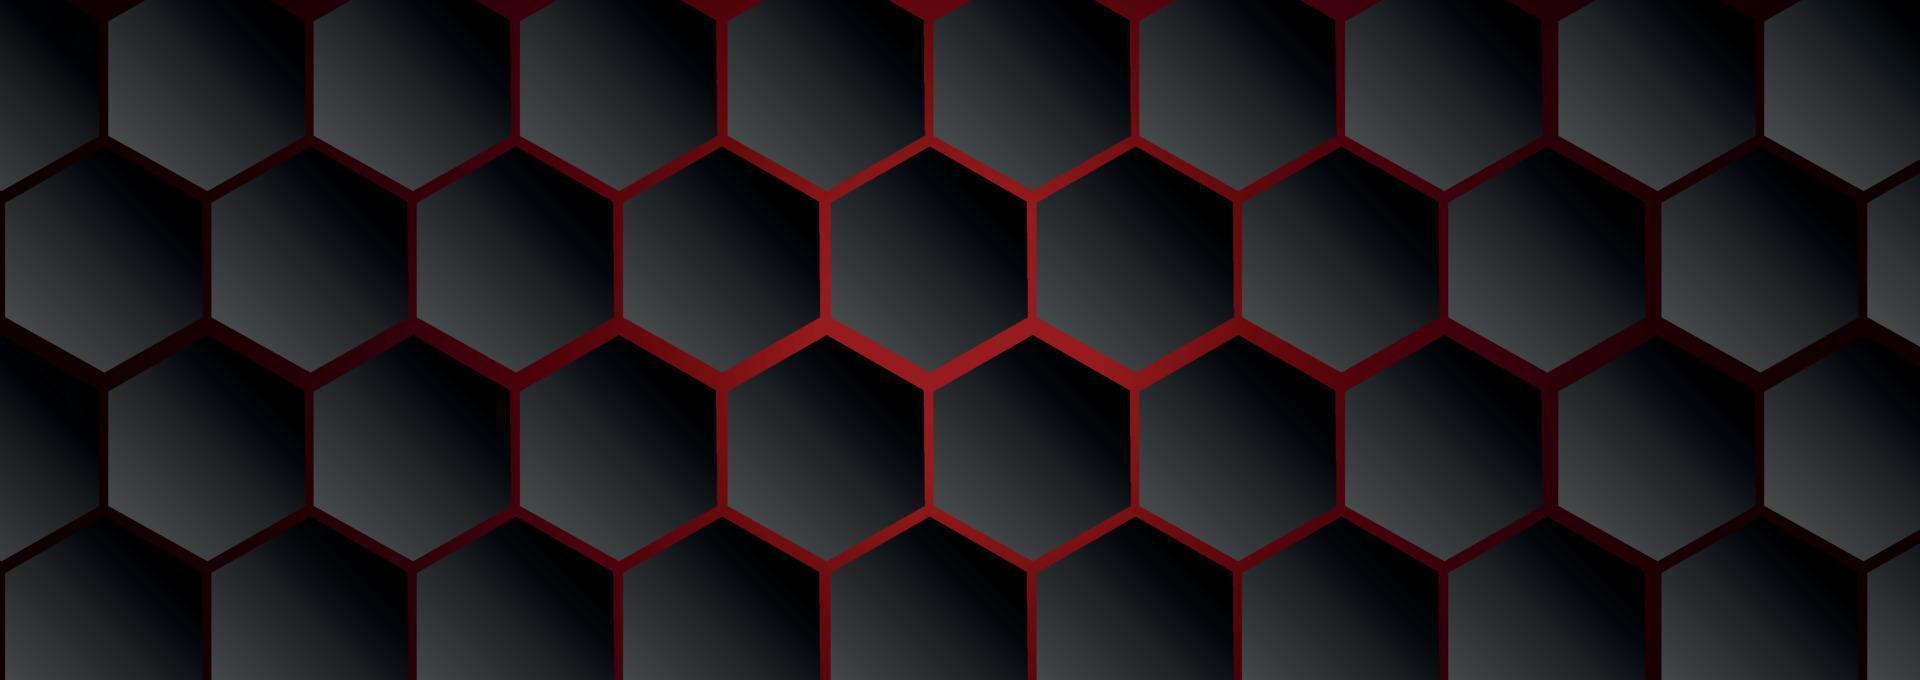 abstrakt webbbakgrund, många hexagoner på en mörkgrå bakgrund - vektor